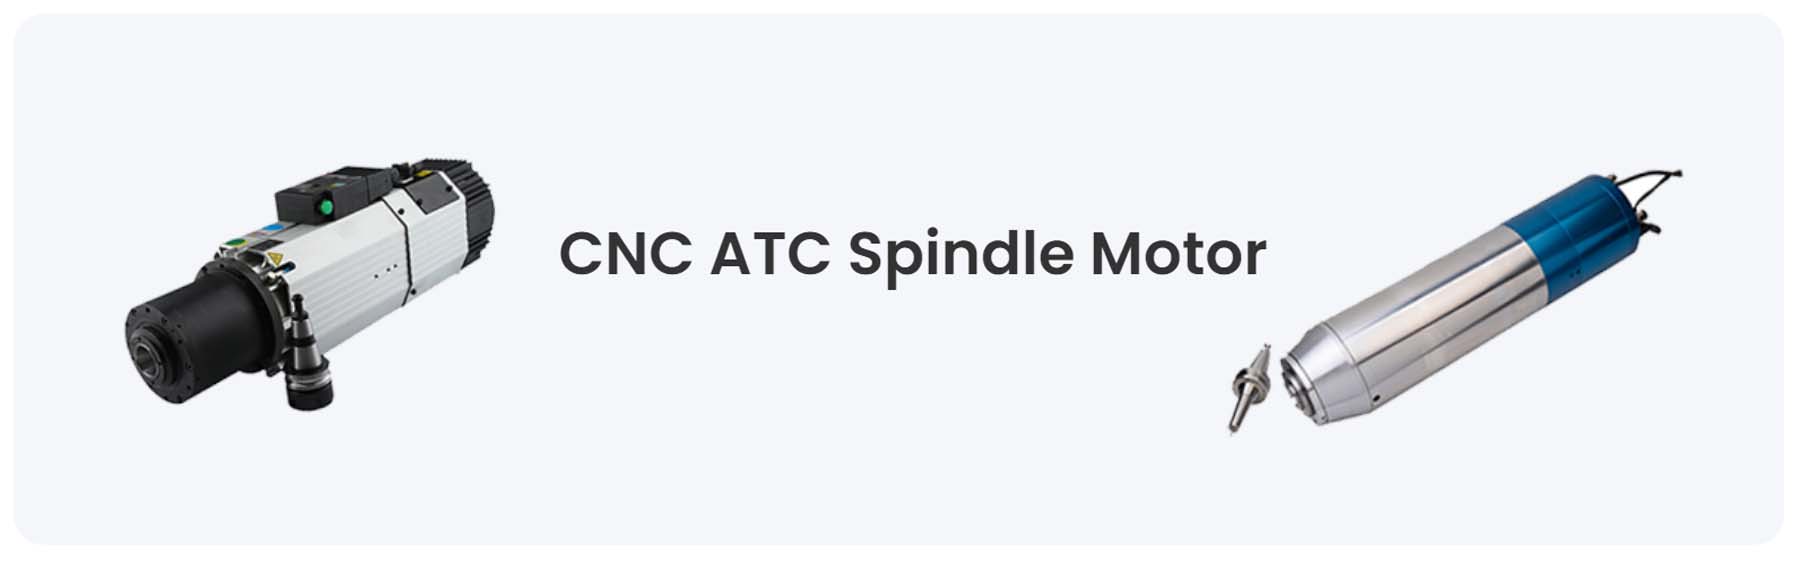 CNC ATC Spindle Motor - HOLRY Motor